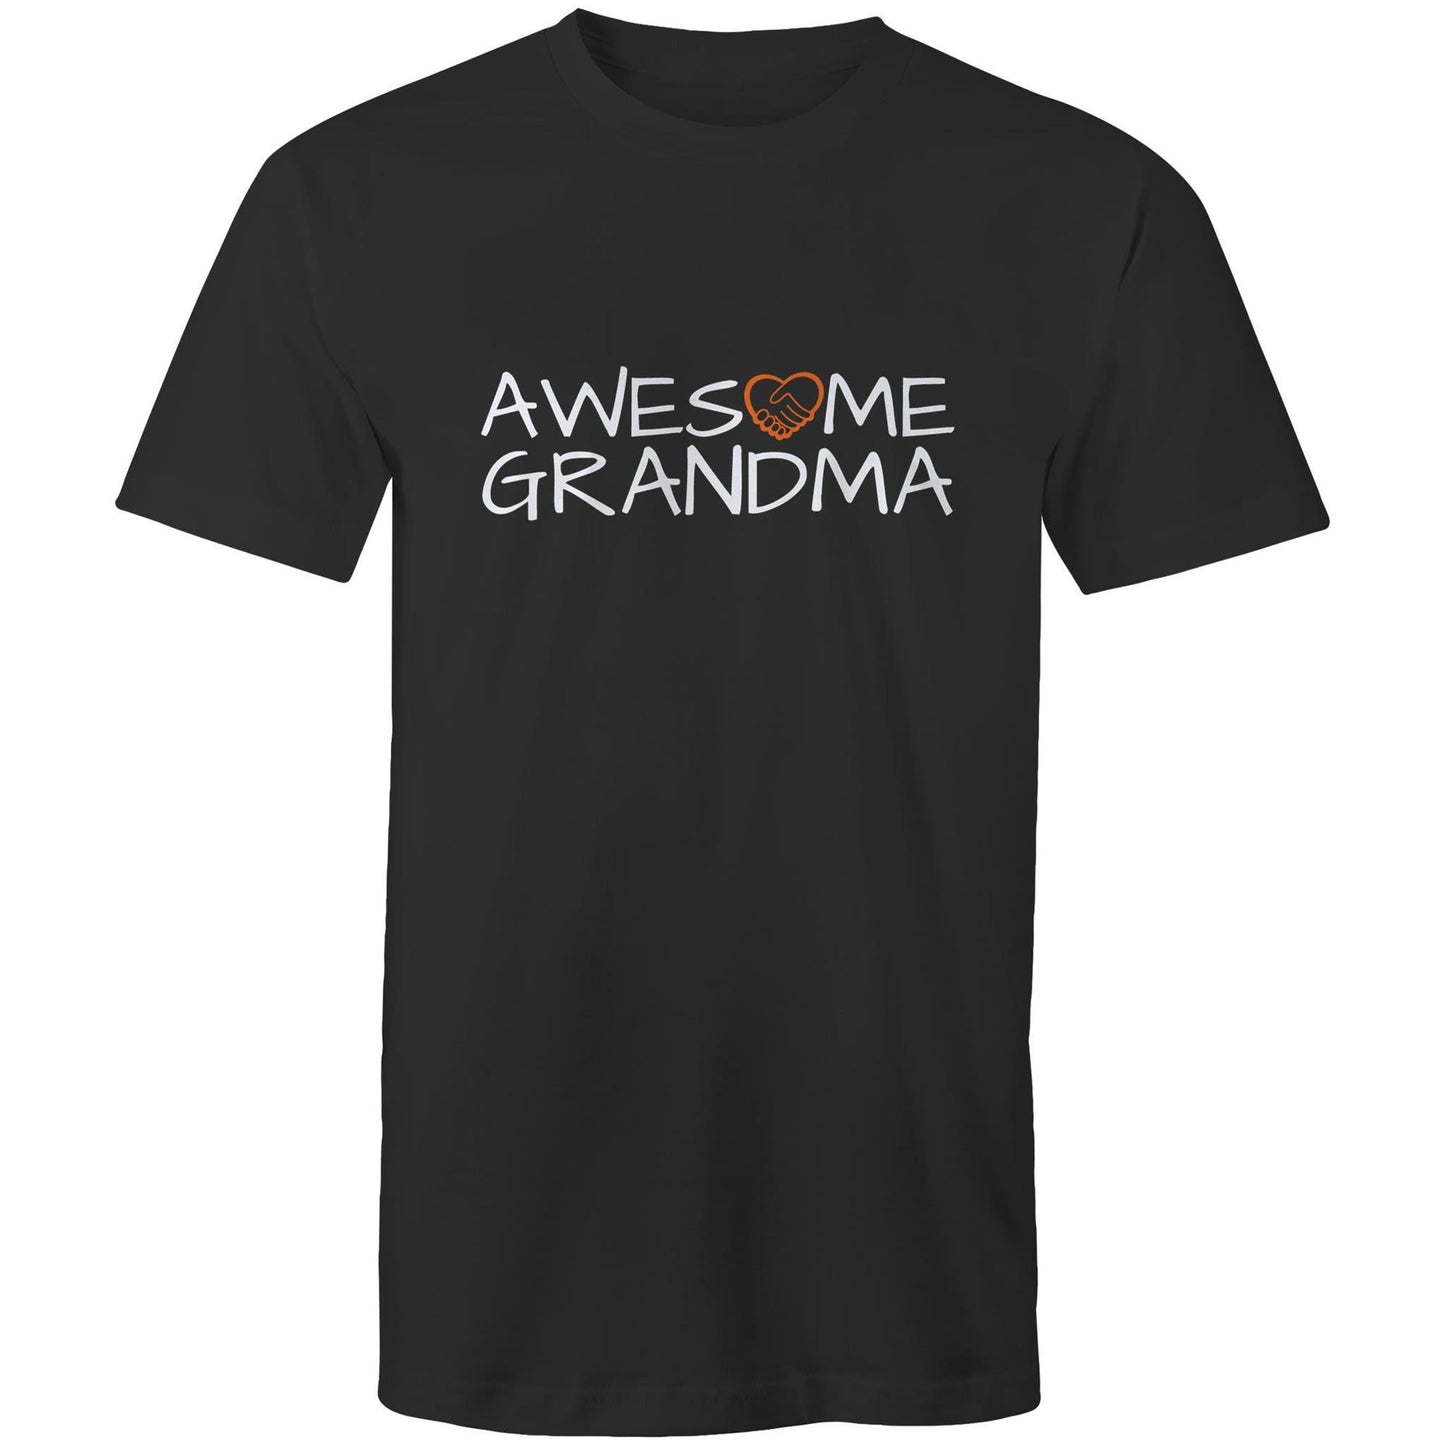 Awesome Grandma T-shirt